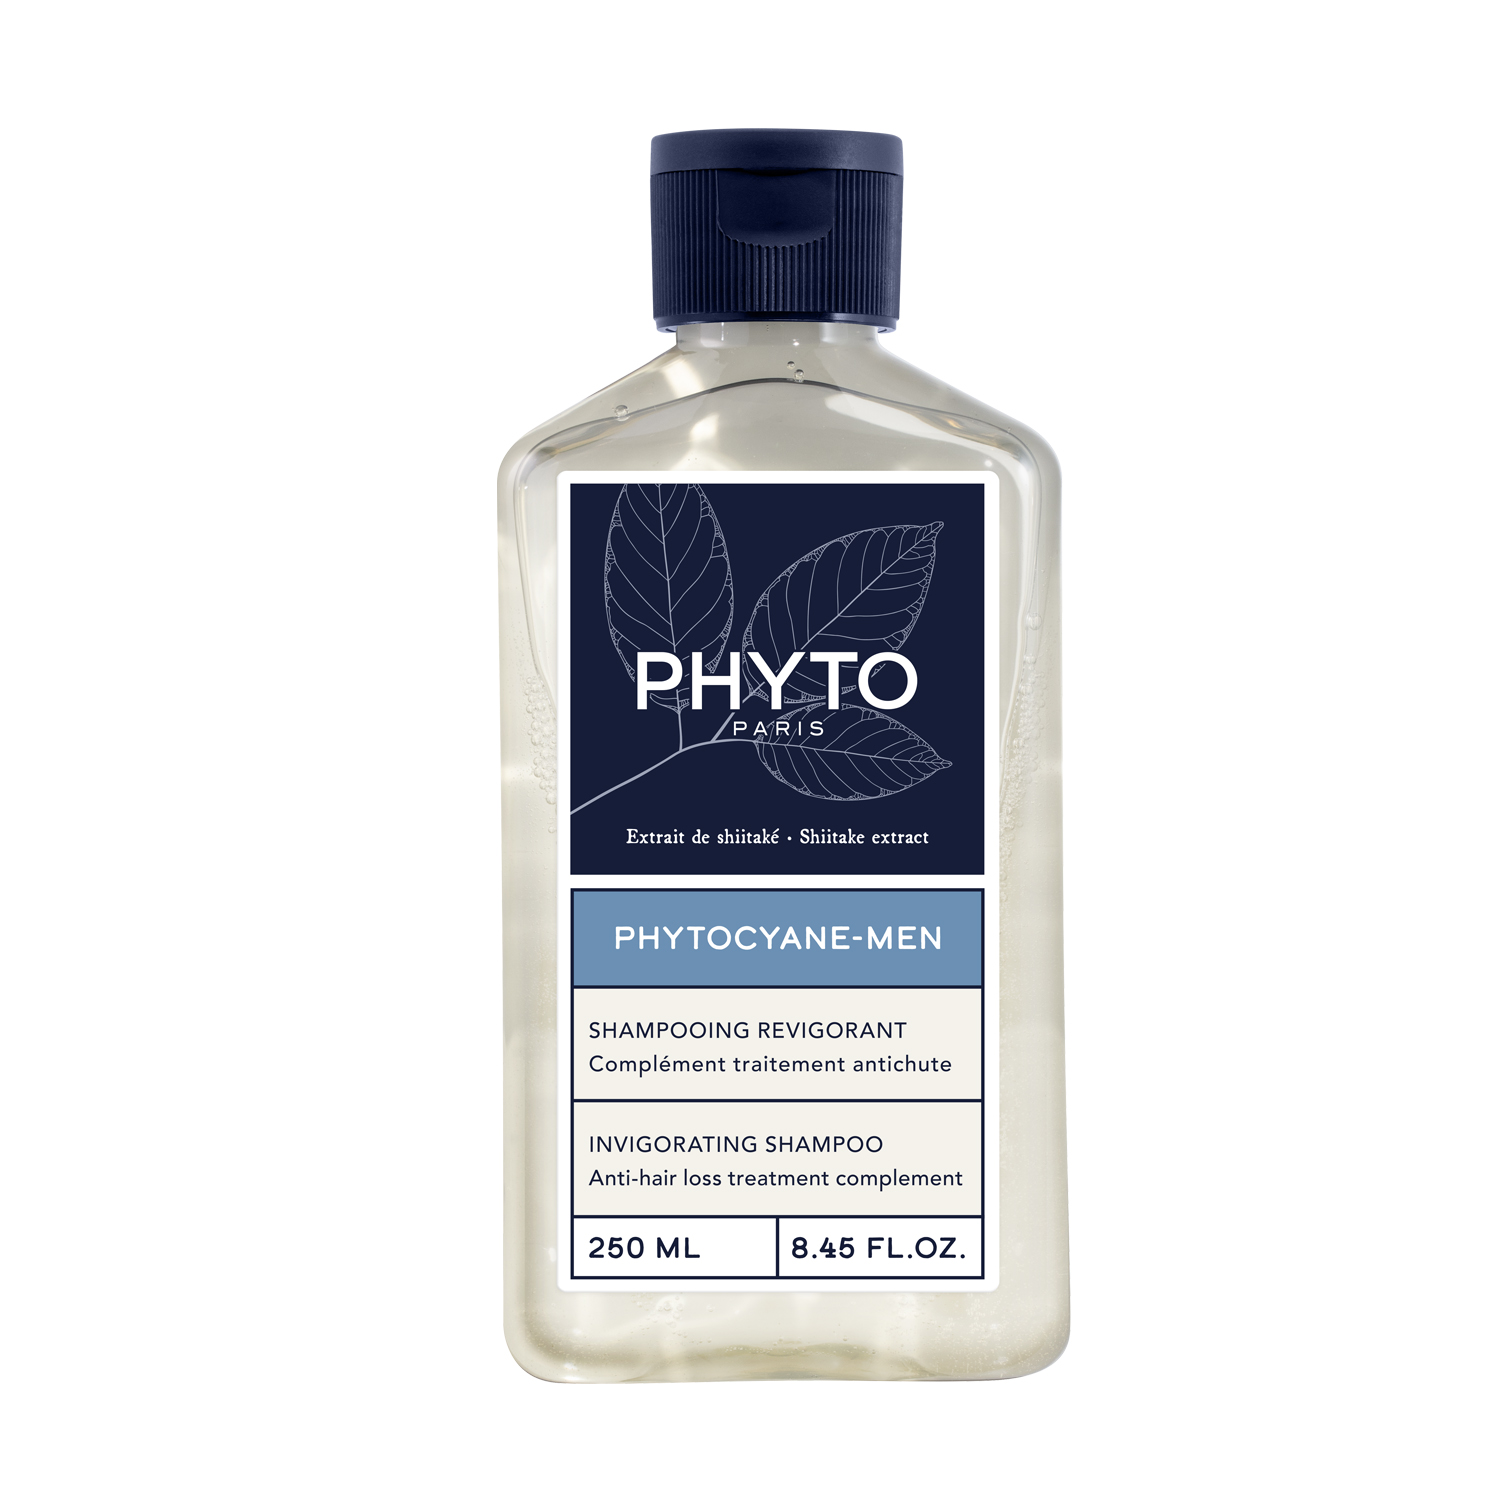 PHYTO PHYTOCYANE укрепляющий шампунь для волос 250мл phyto набор для женщин сыворотка от выпадения волос 12х 5мл укрепляющий шампунь 100 мл phyto phytocyane